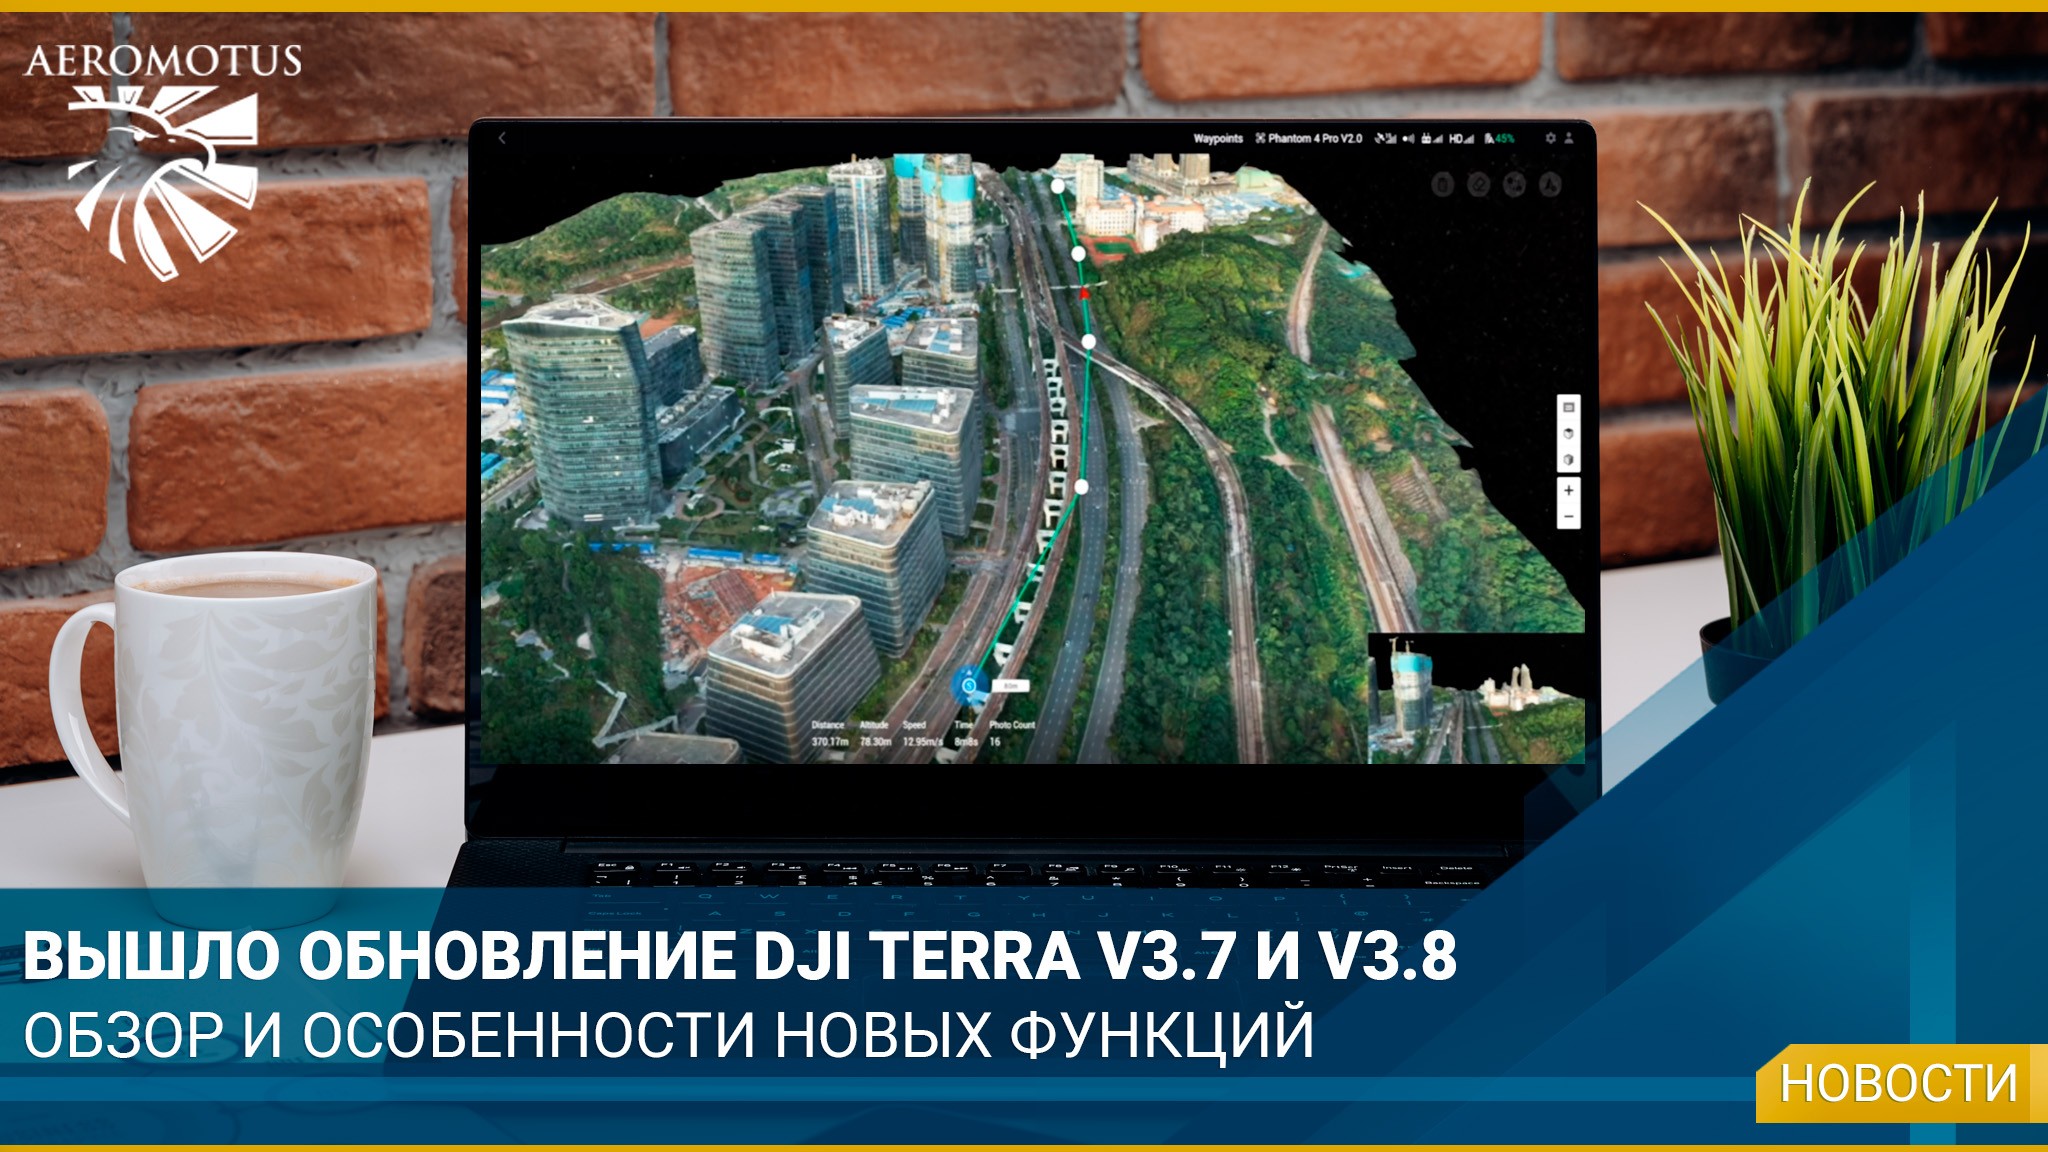 Представляем обновления DJI Terra V3.7 и V3.8 - Интересная информация